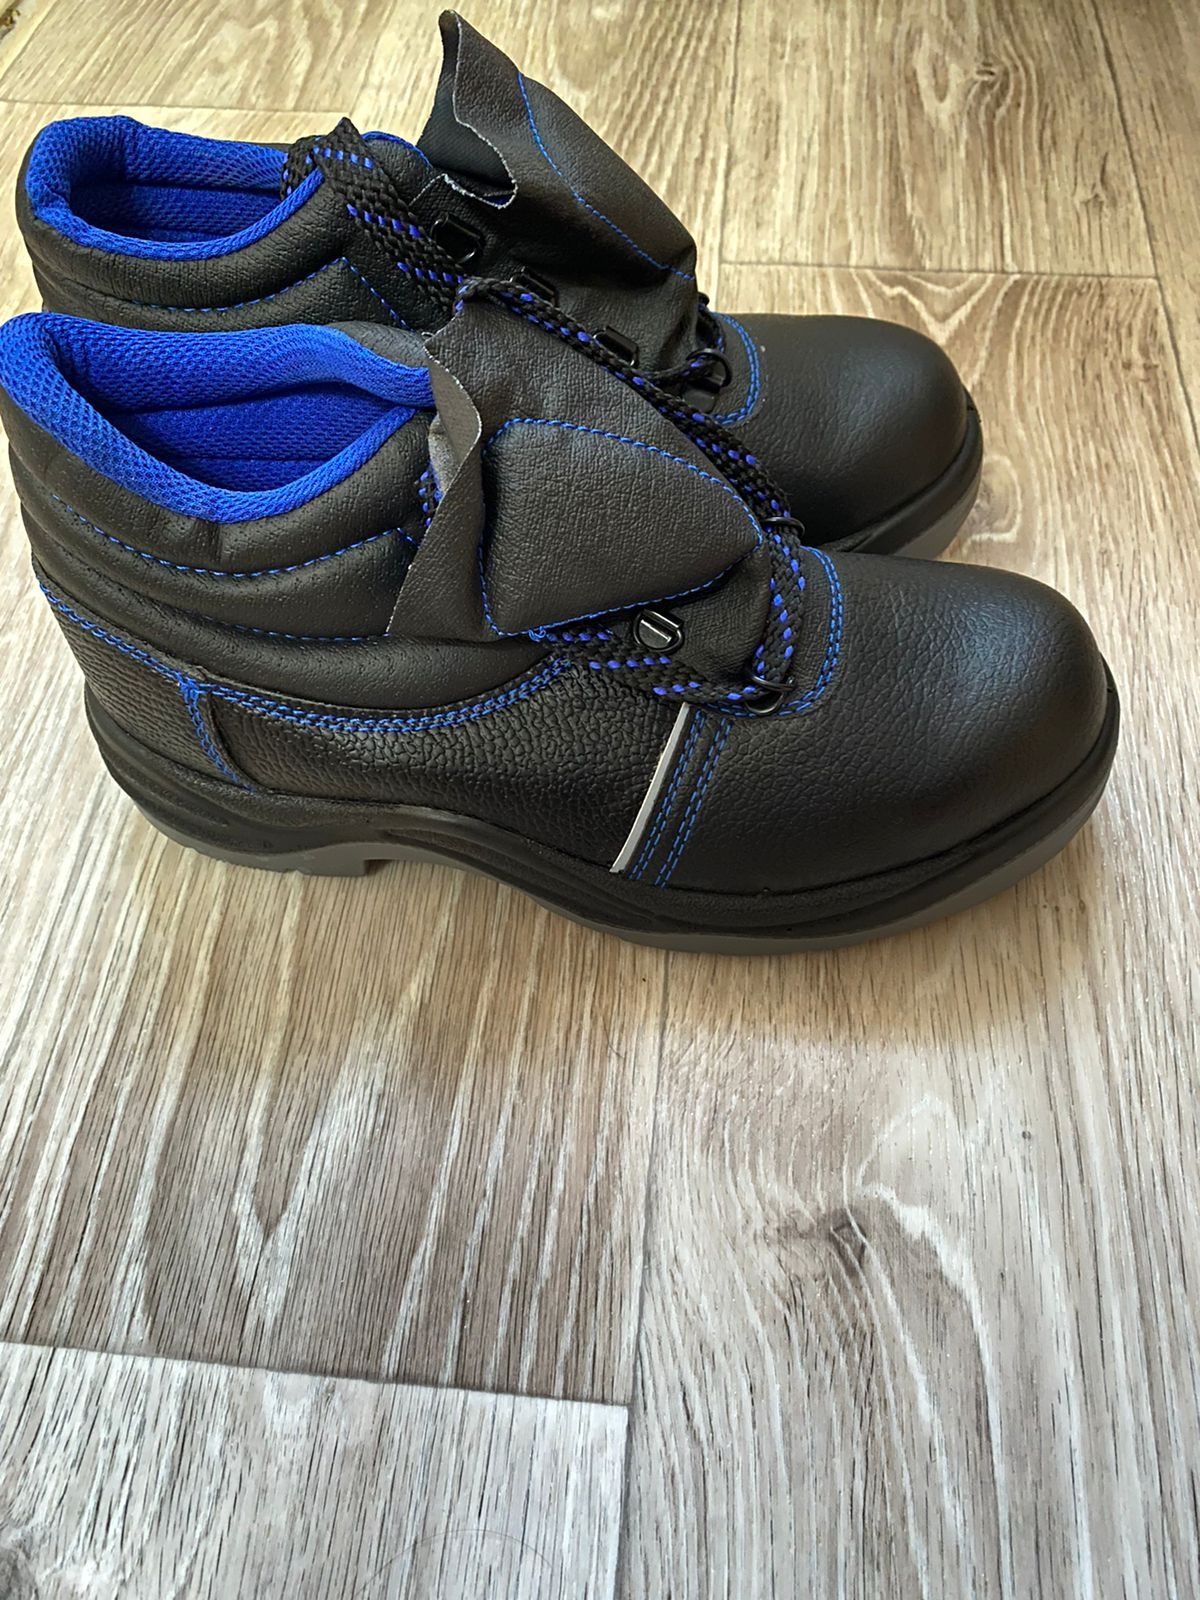 Спец ботинки с железным носком